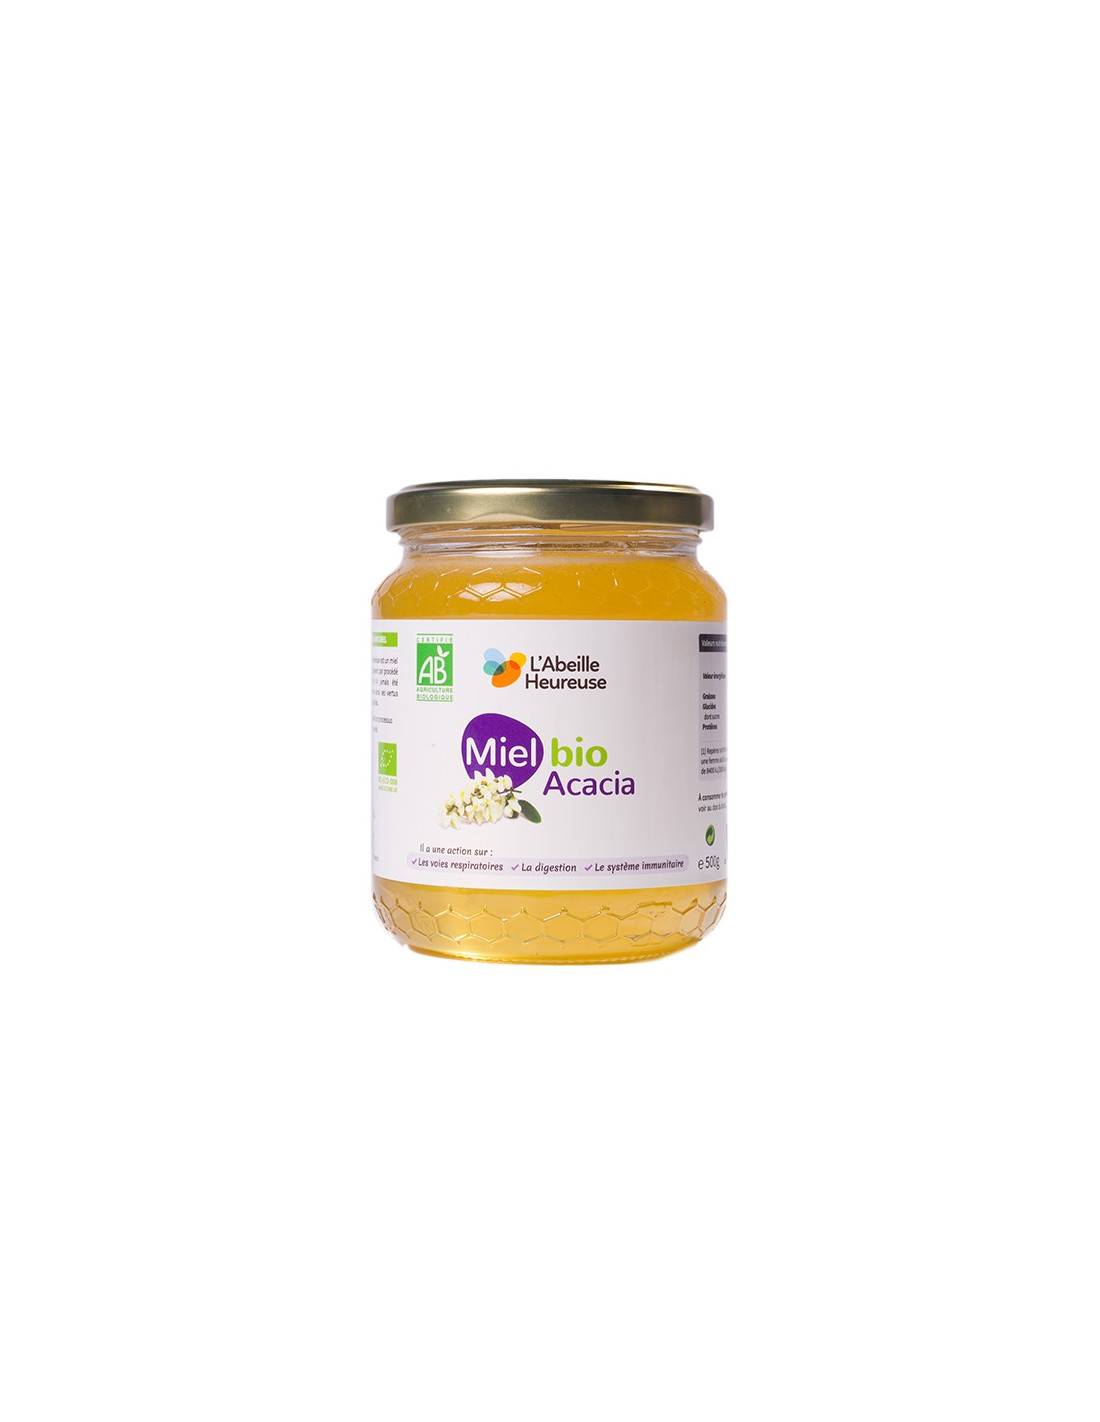 Miel de Thym - Ma ruche -250gr-Bio - ByO - Votre magasin naturel et bio